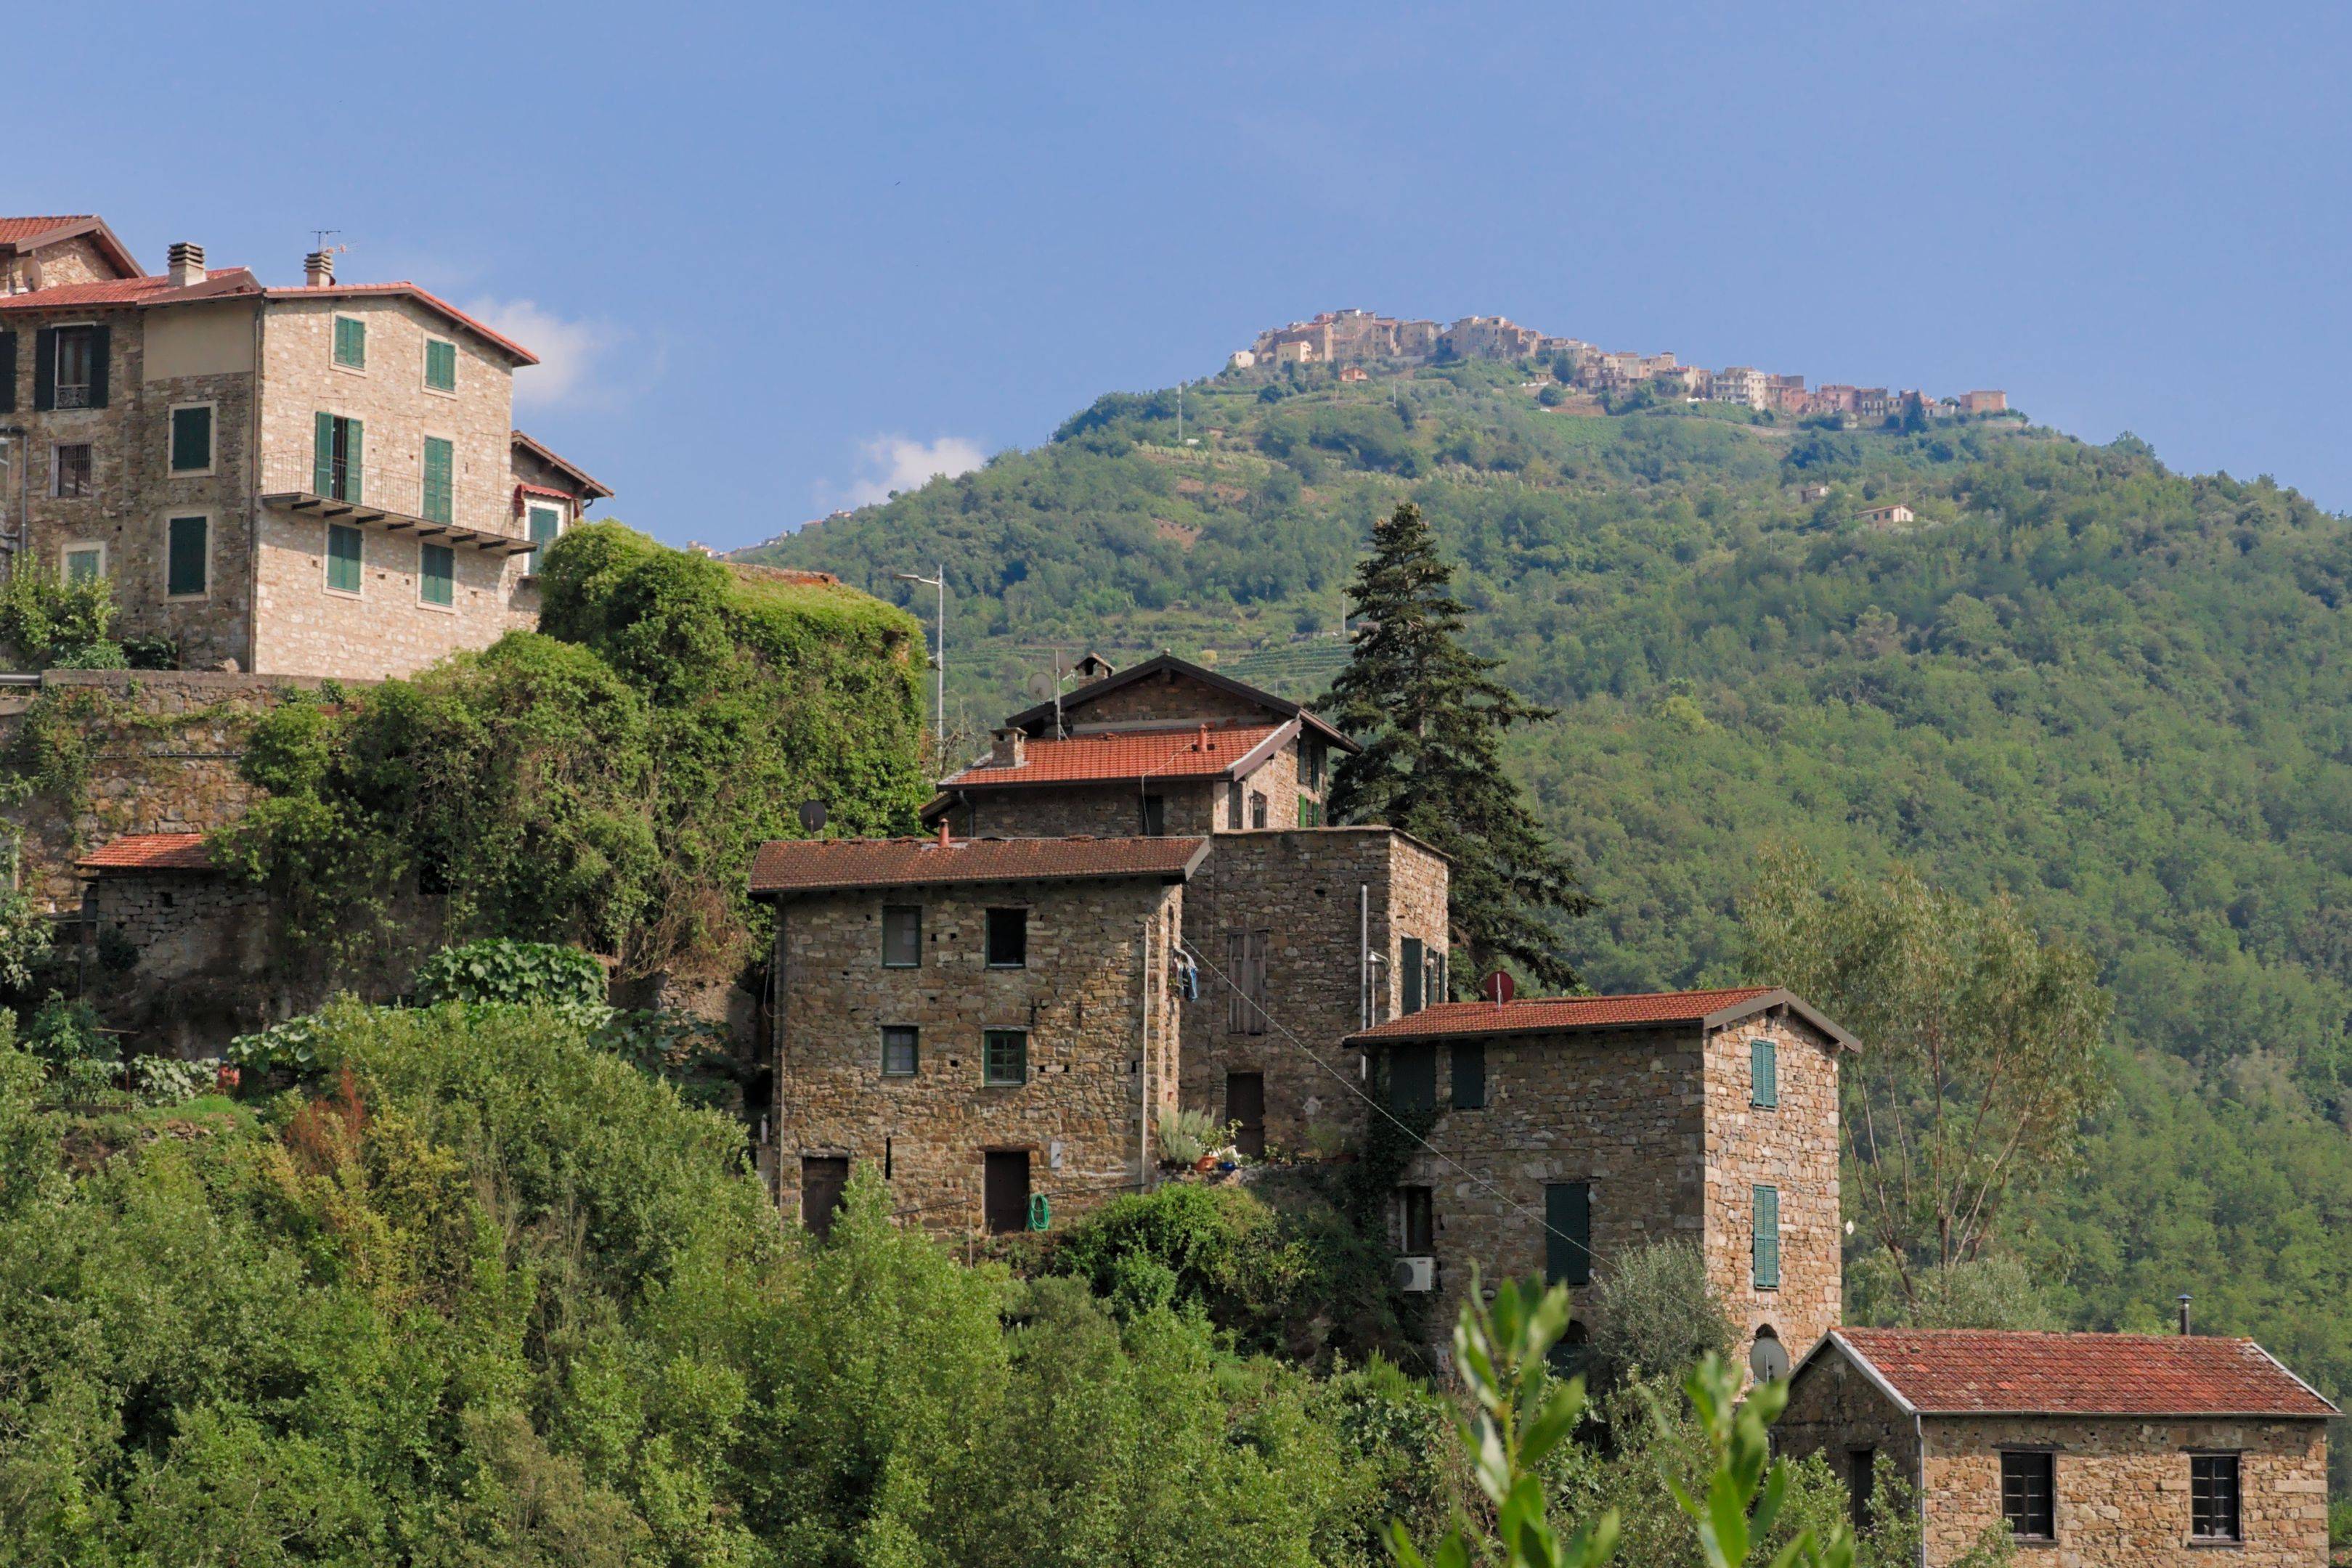 Anspruchsvoll zum schönsten Dorf Italiens 